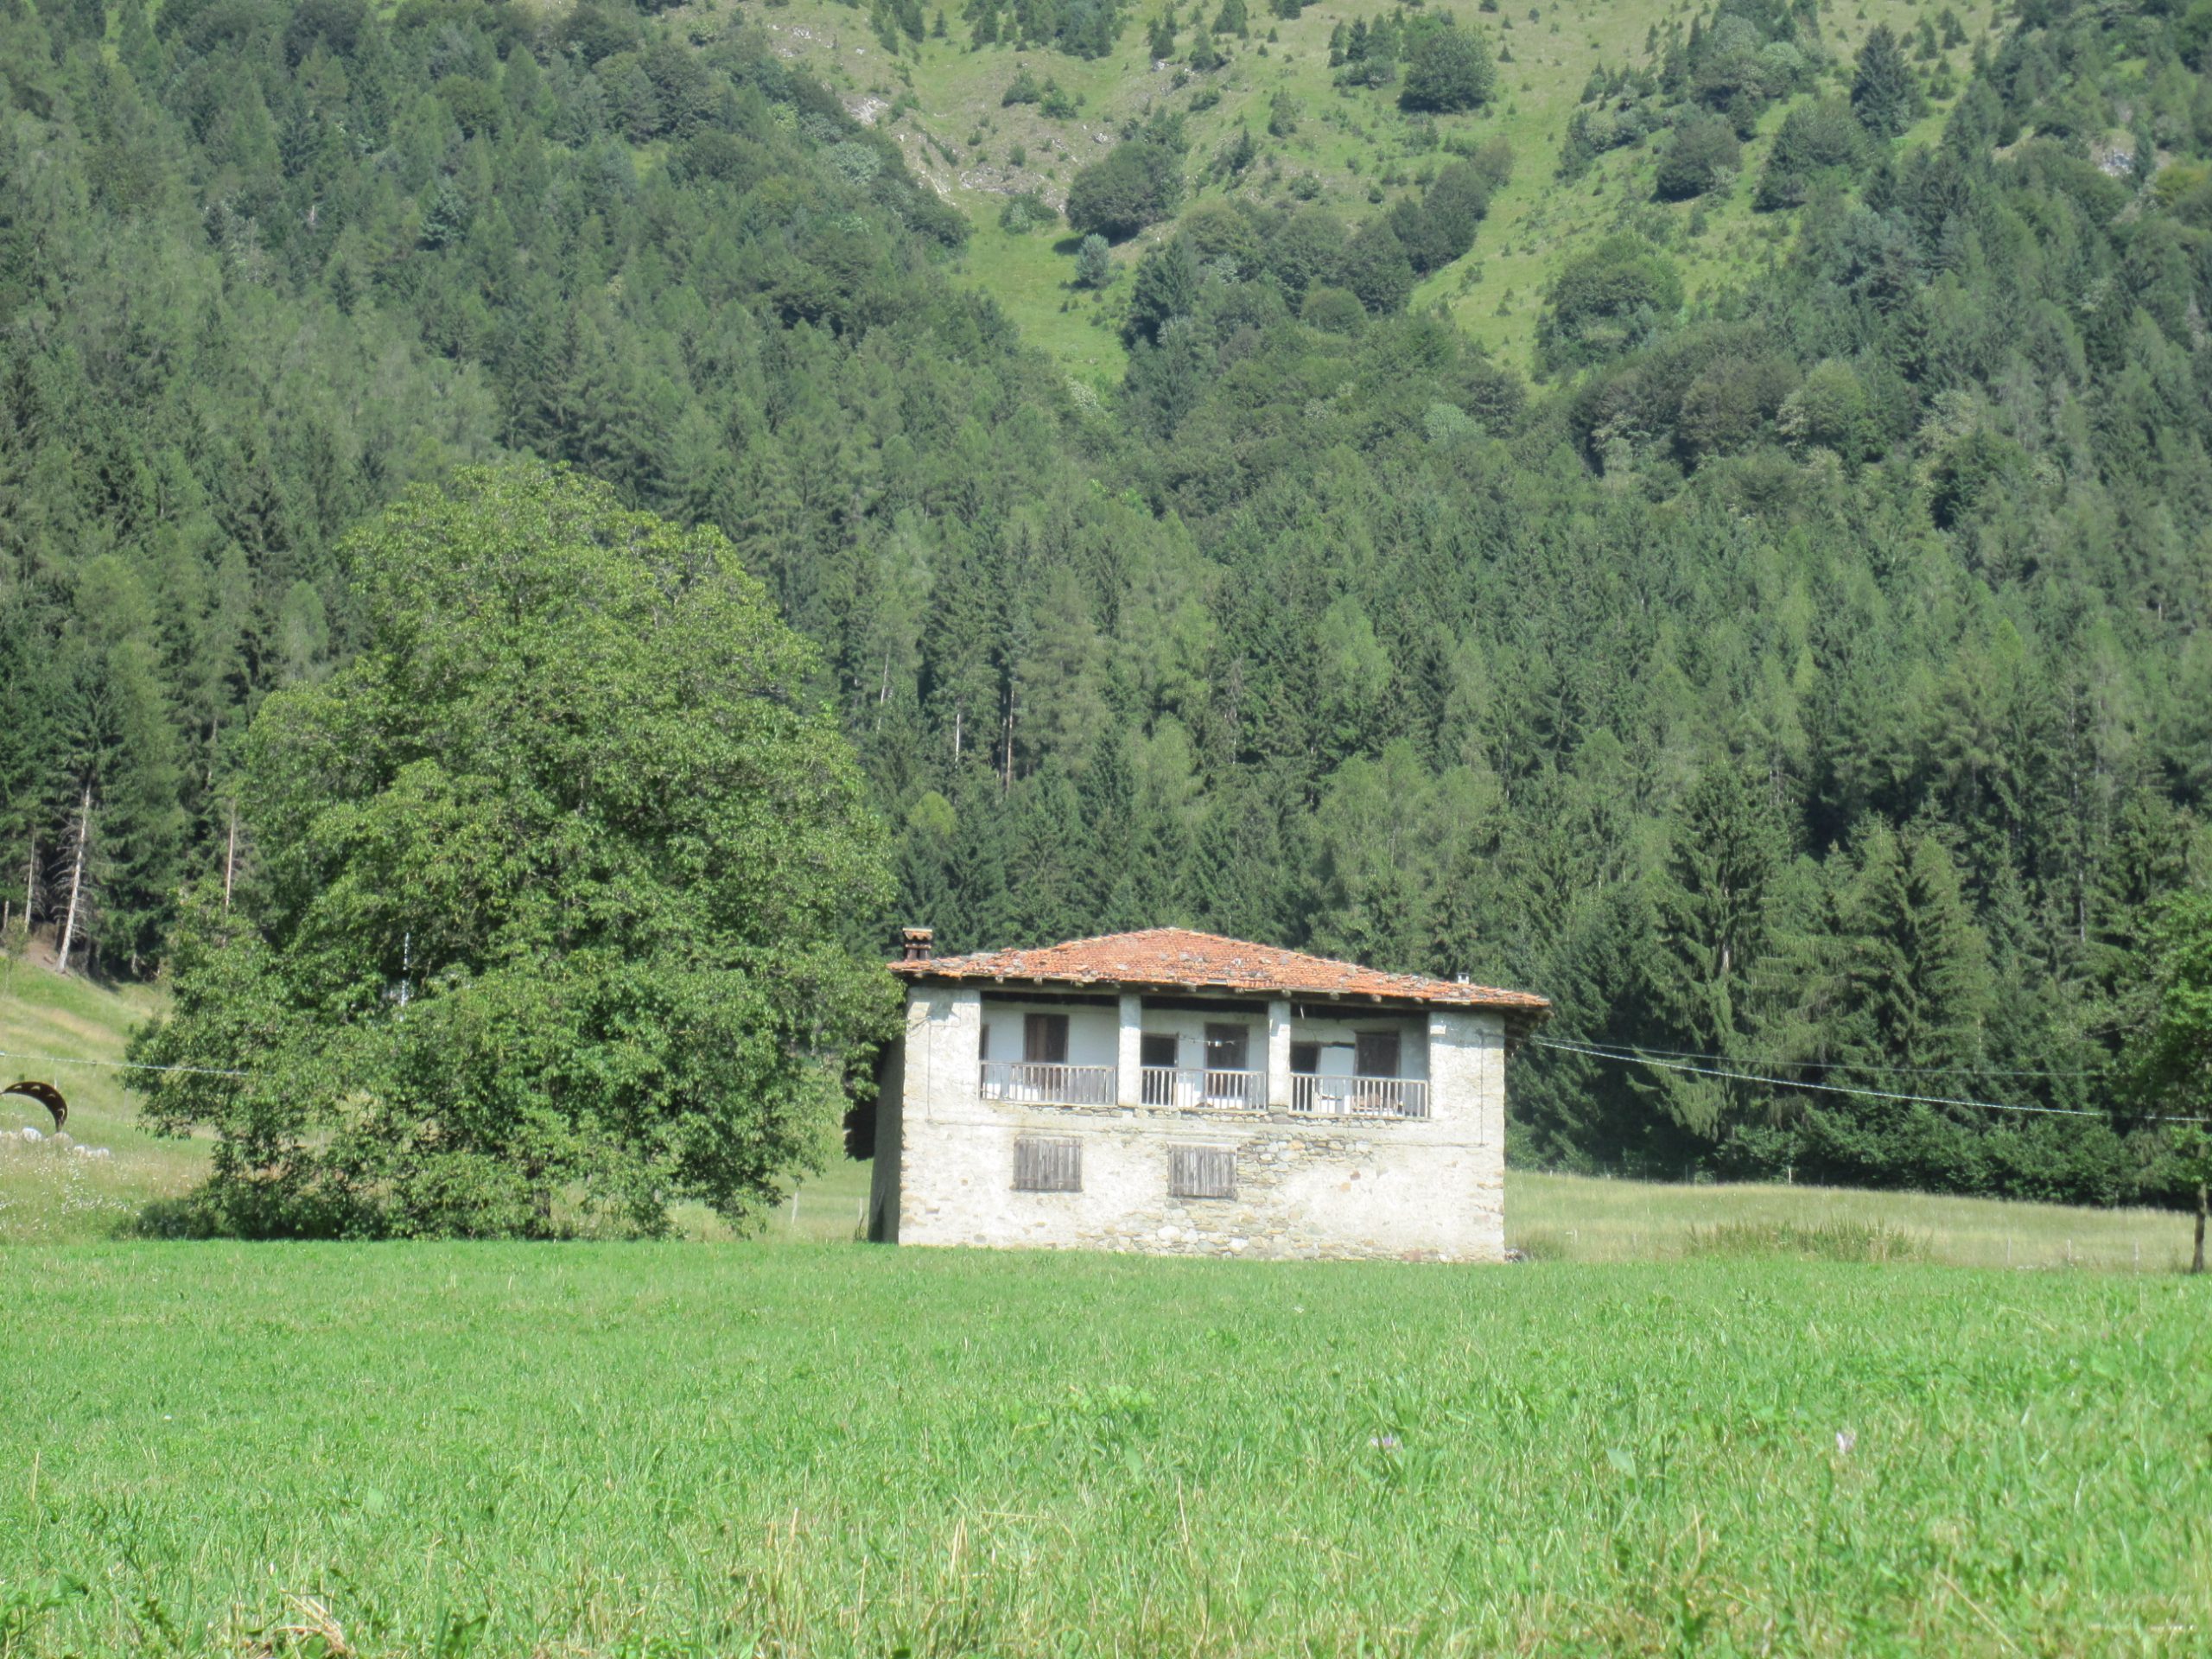 Cerco casa in campagna o montagna in Lombardia o Piemonte